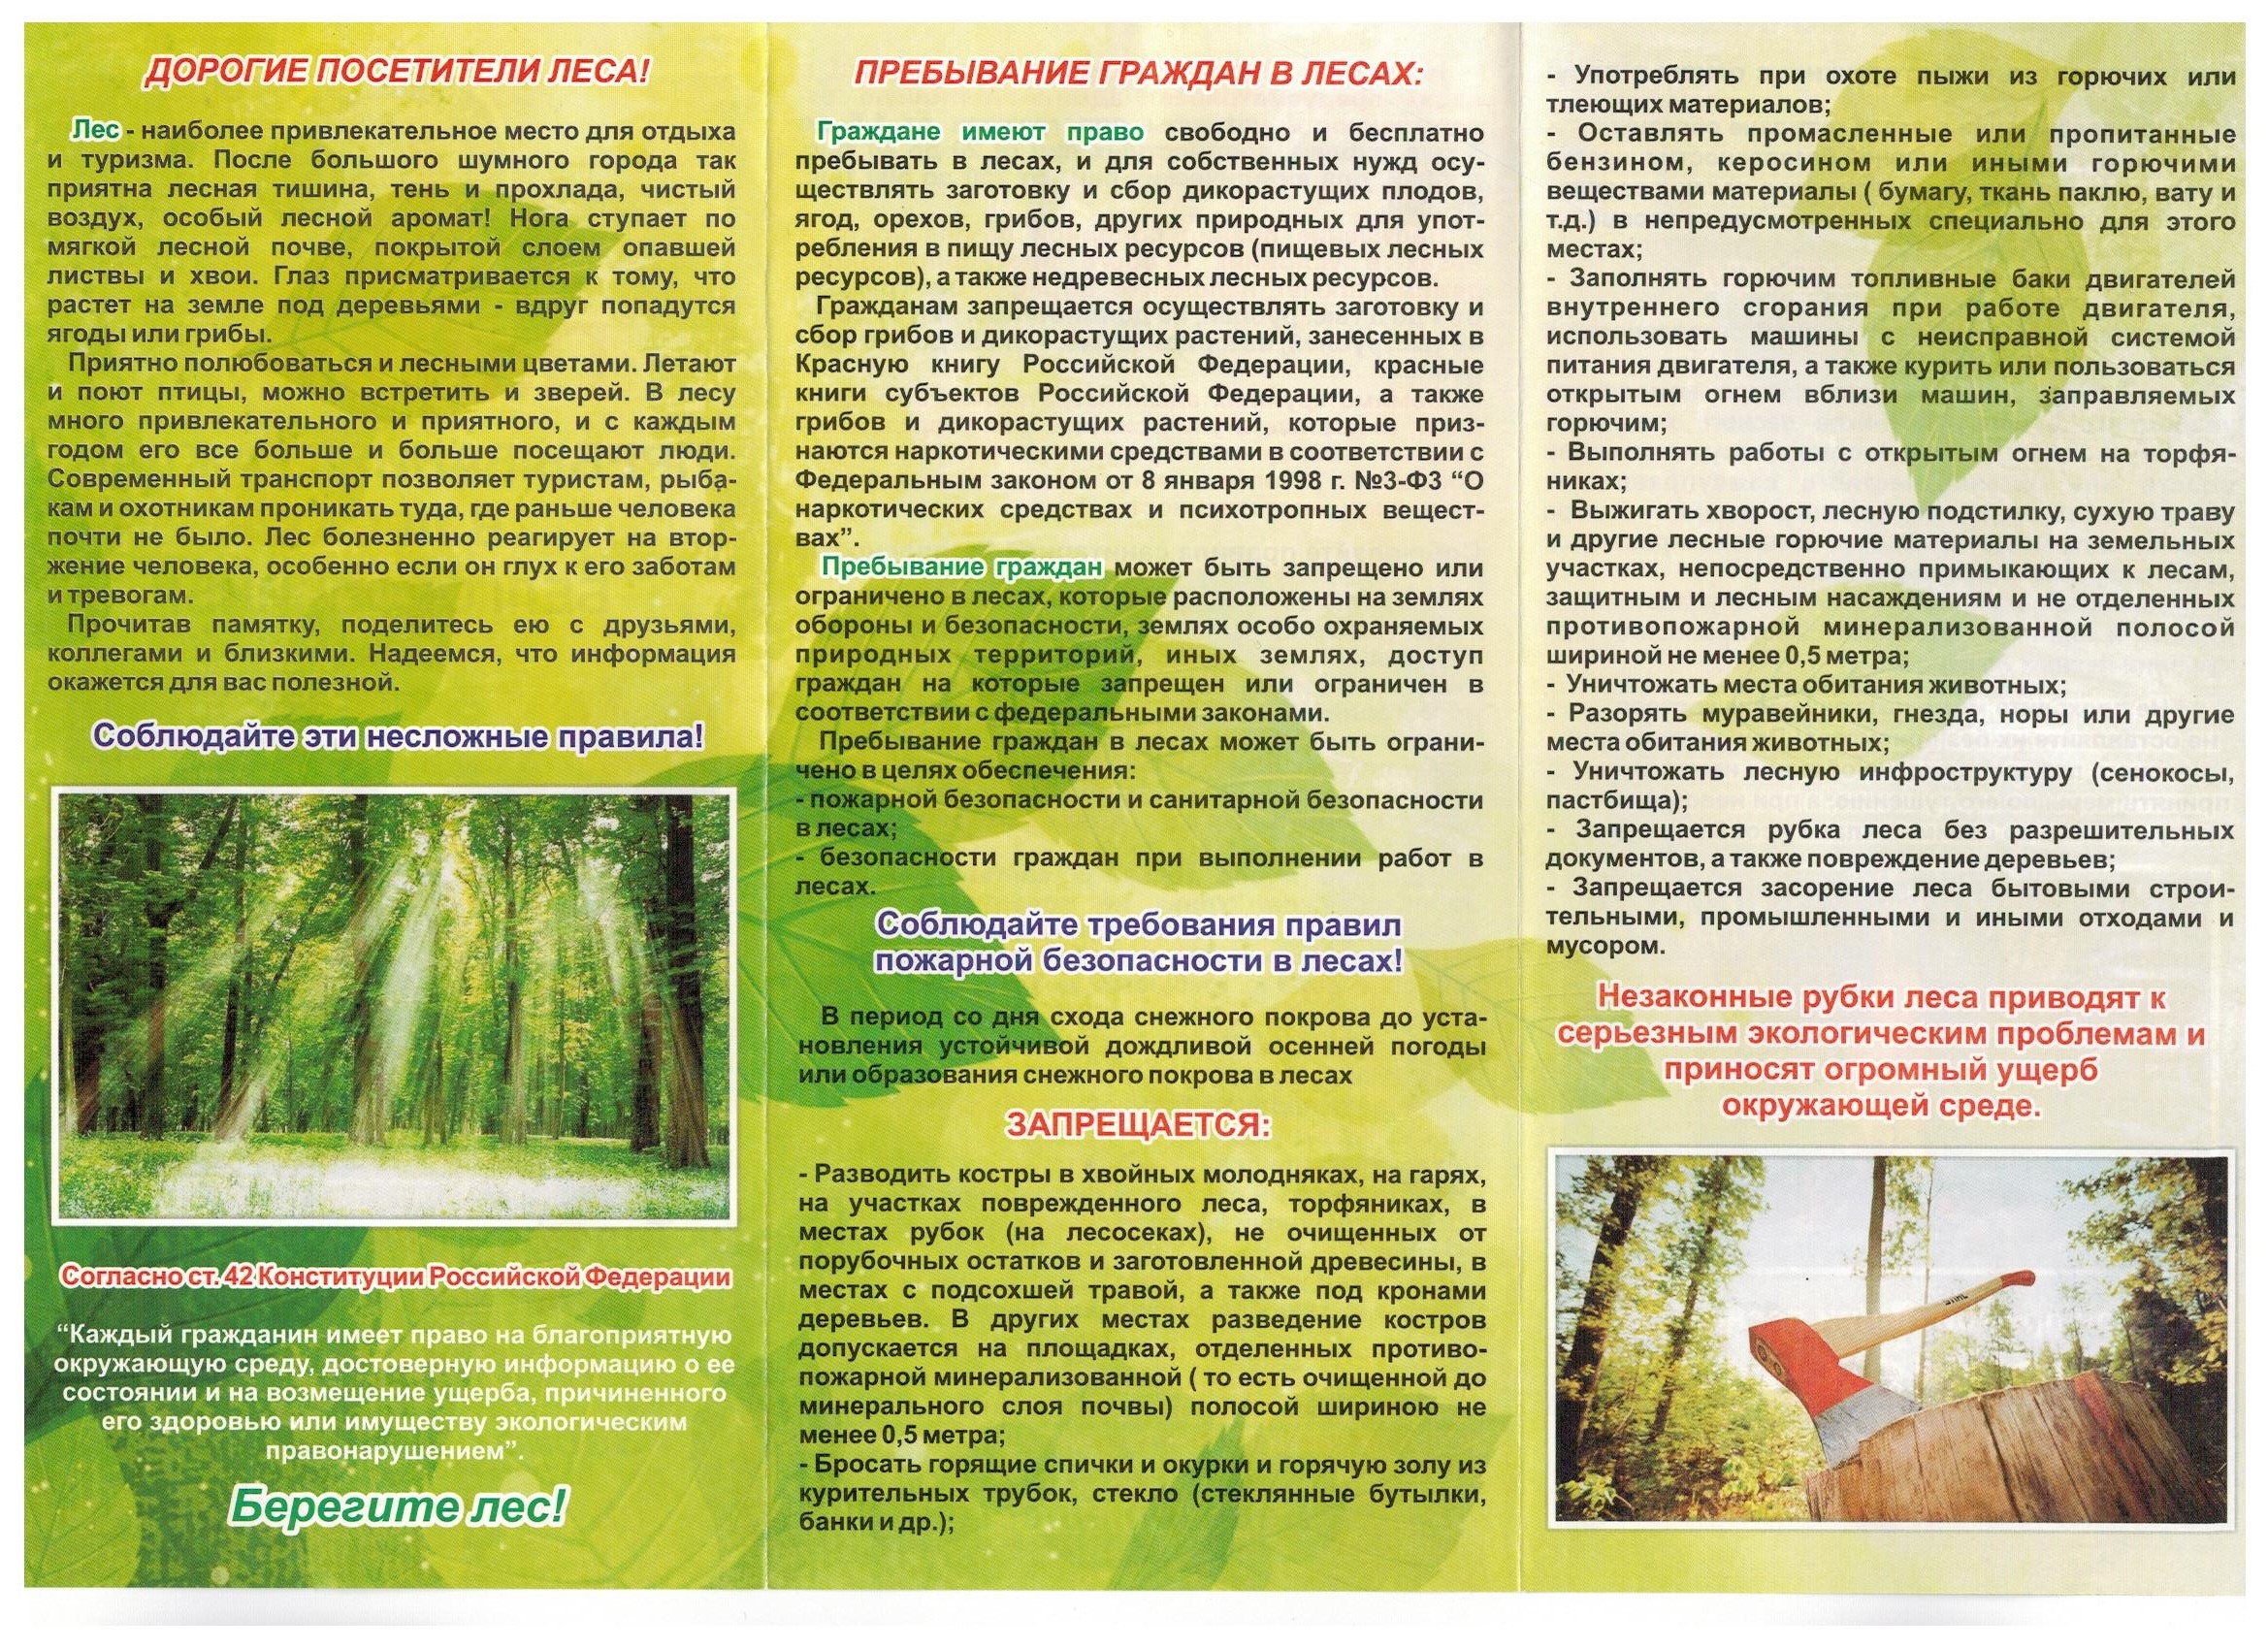 Az Orosz Föderáció (RF) erdőkódja 2020 - 2019 Moszkva, Szentpétervár